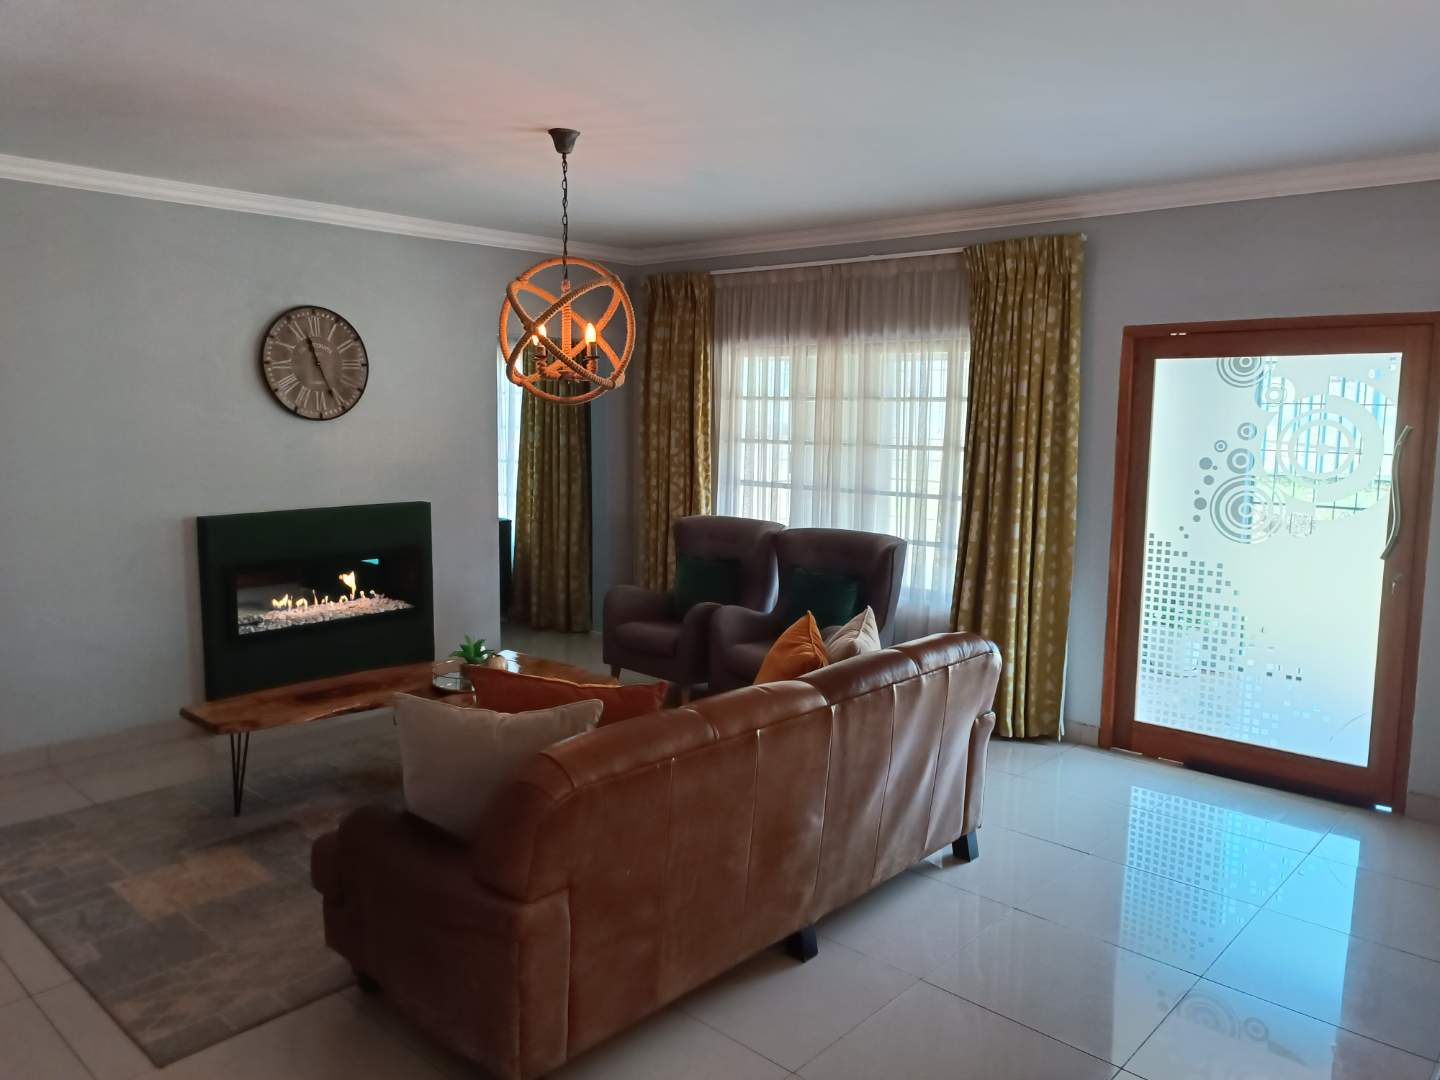 5 Bedroom Property for Sale in Merrivale KwaZulu-Natal